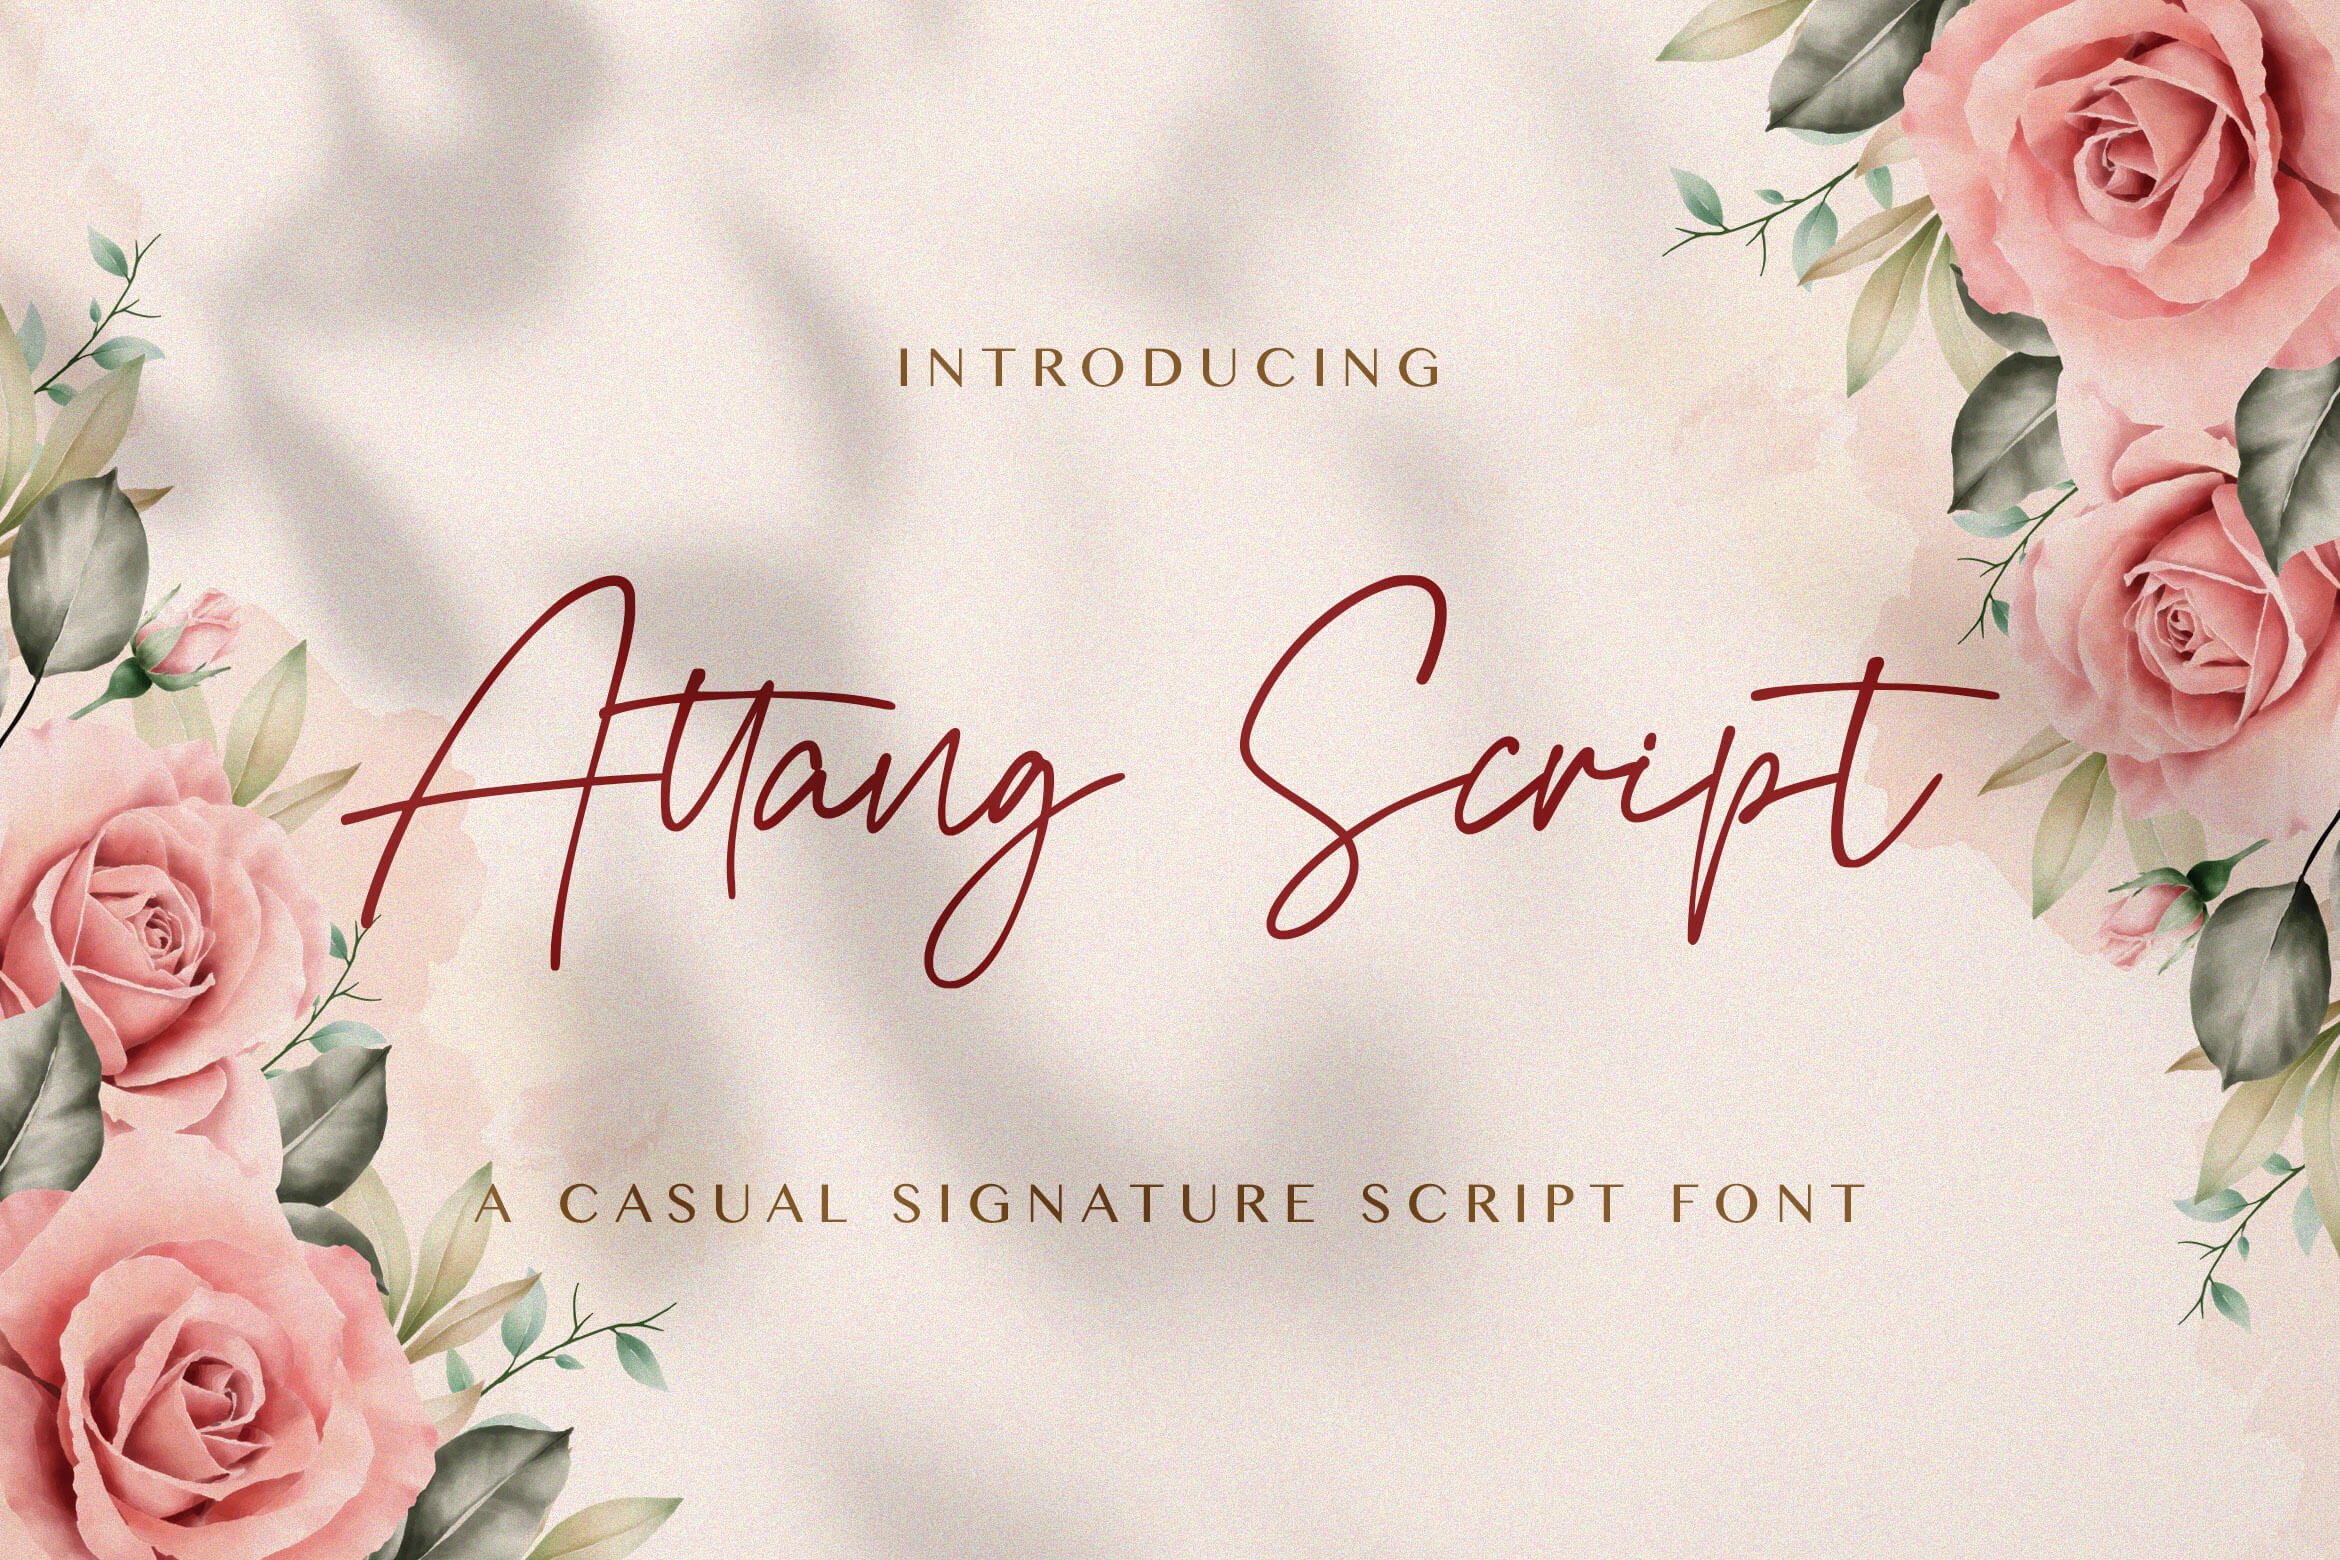 Attang Script - Handwritten Font cover image.